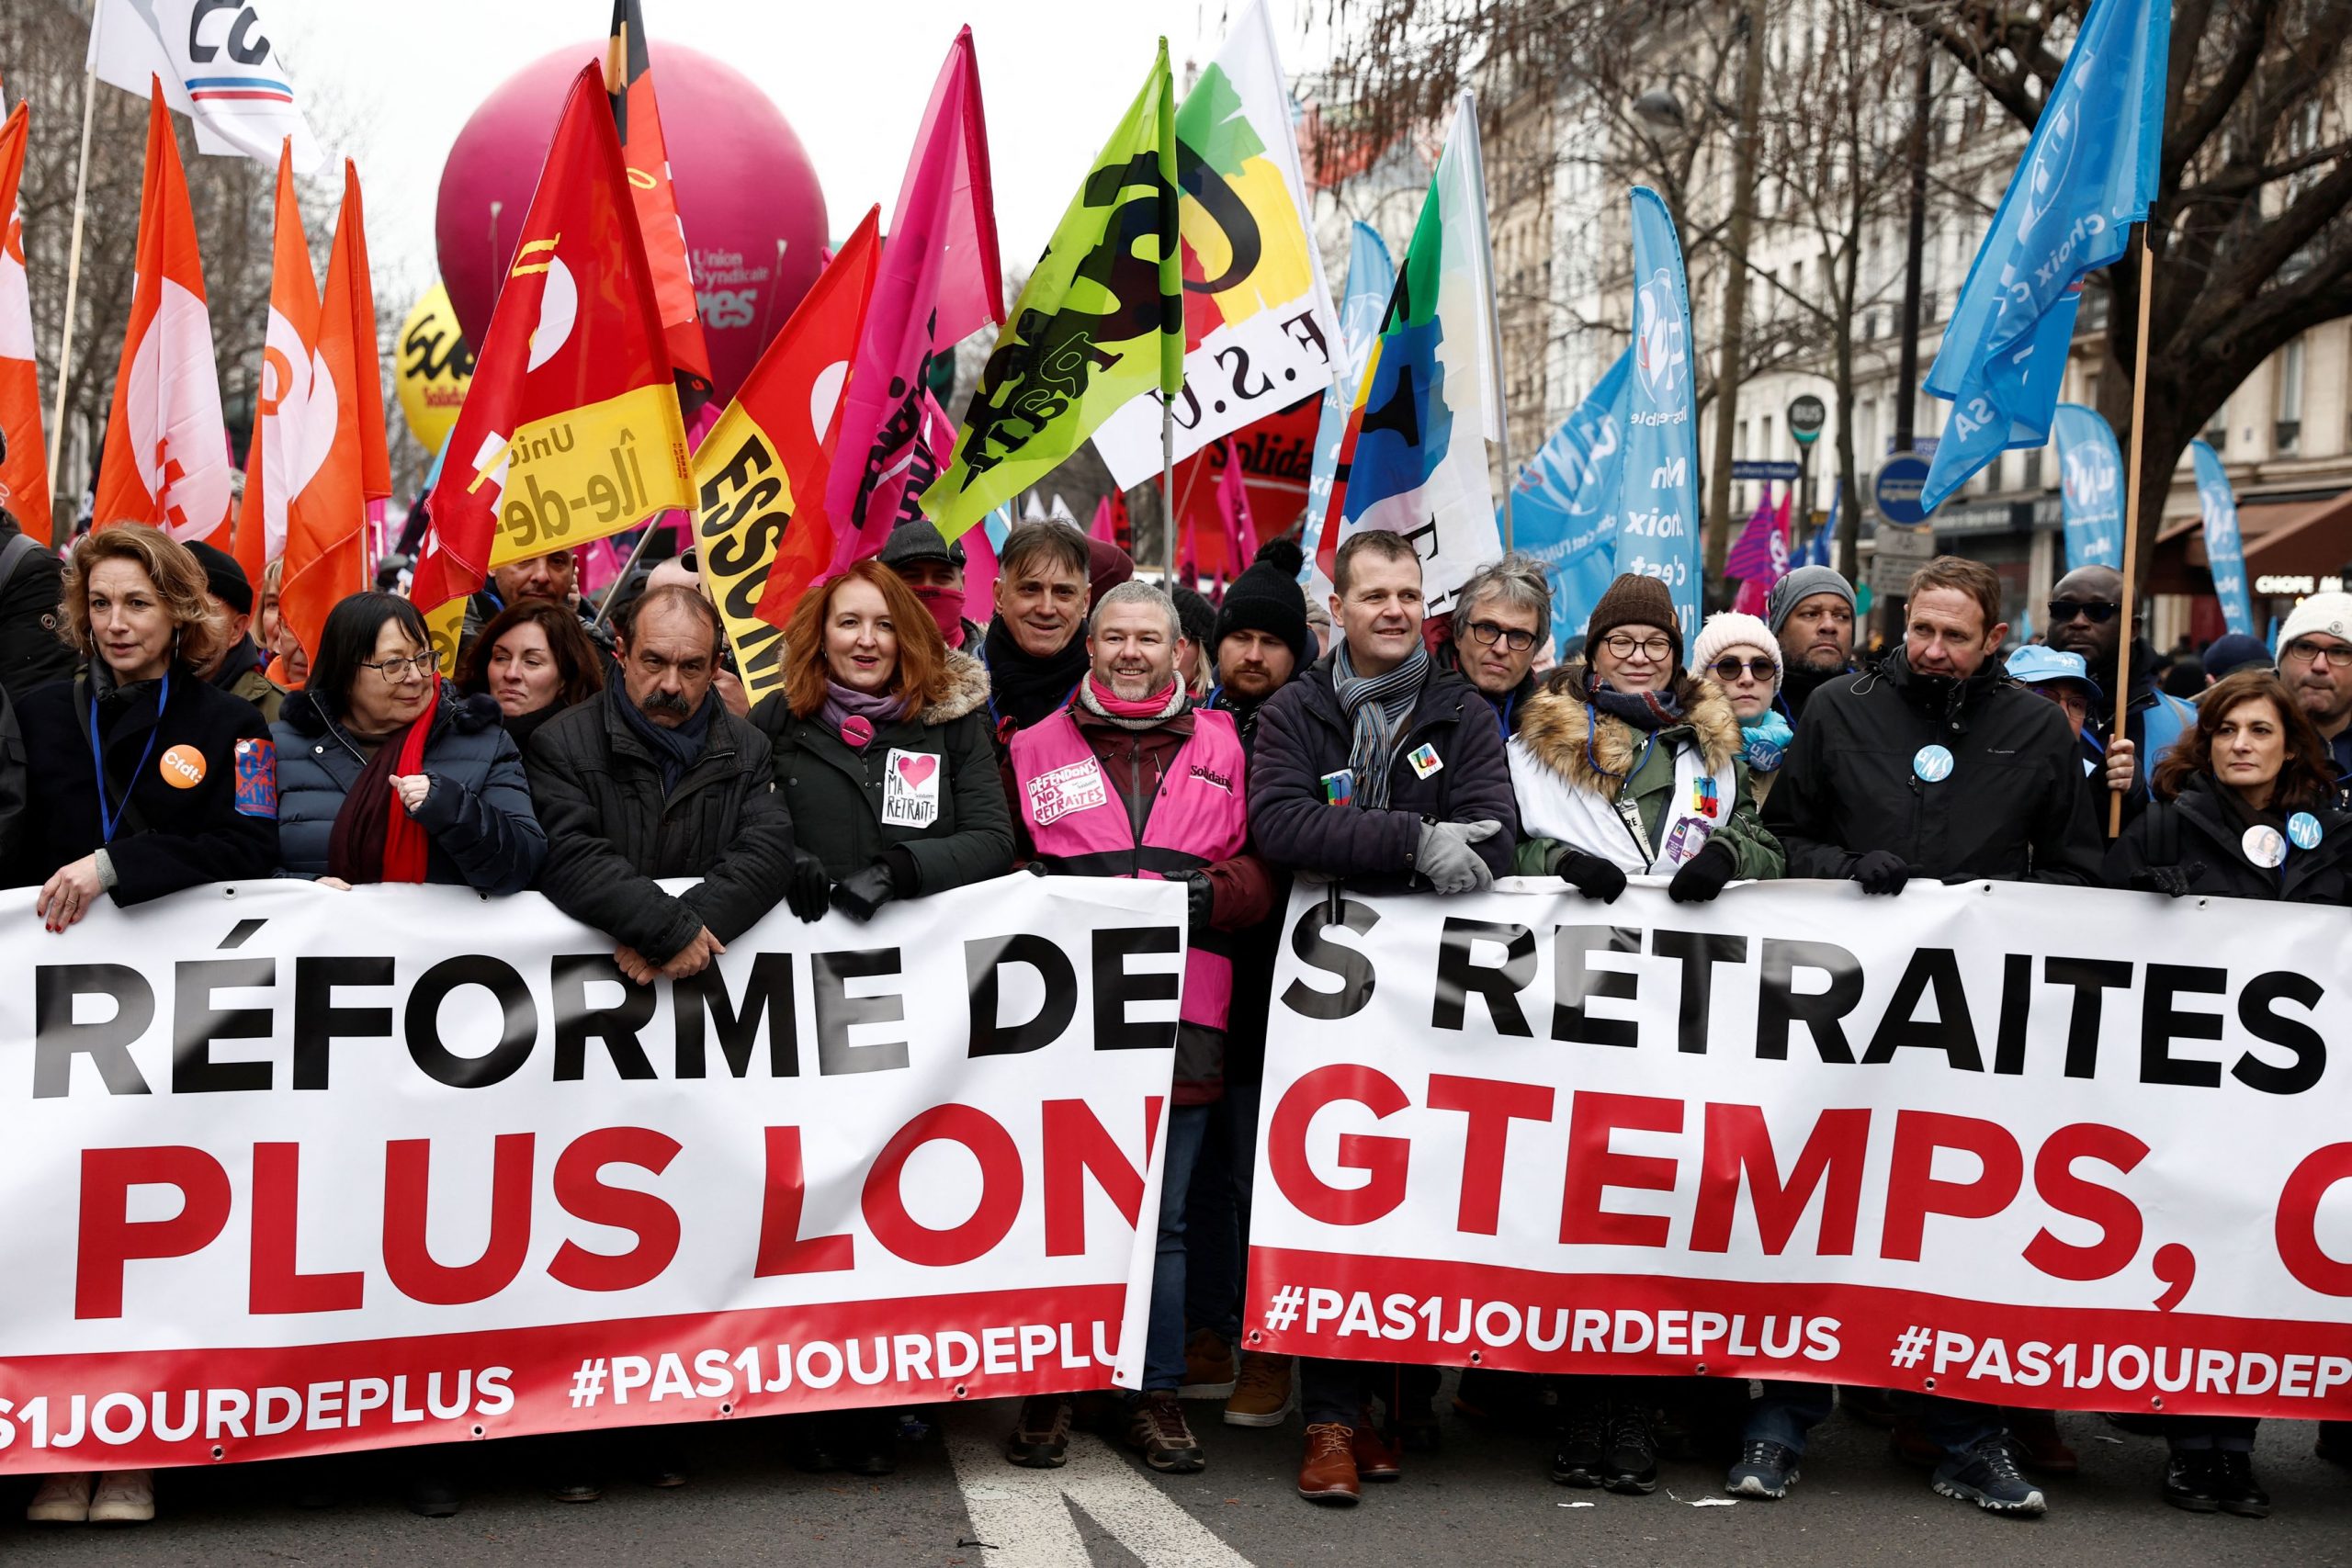 Γαλλία: Απεργία και μαζικές διαδηλώσεις κατά συνταξιοδοτικής μεταρρύθμισης Μακρόν [photo/video]